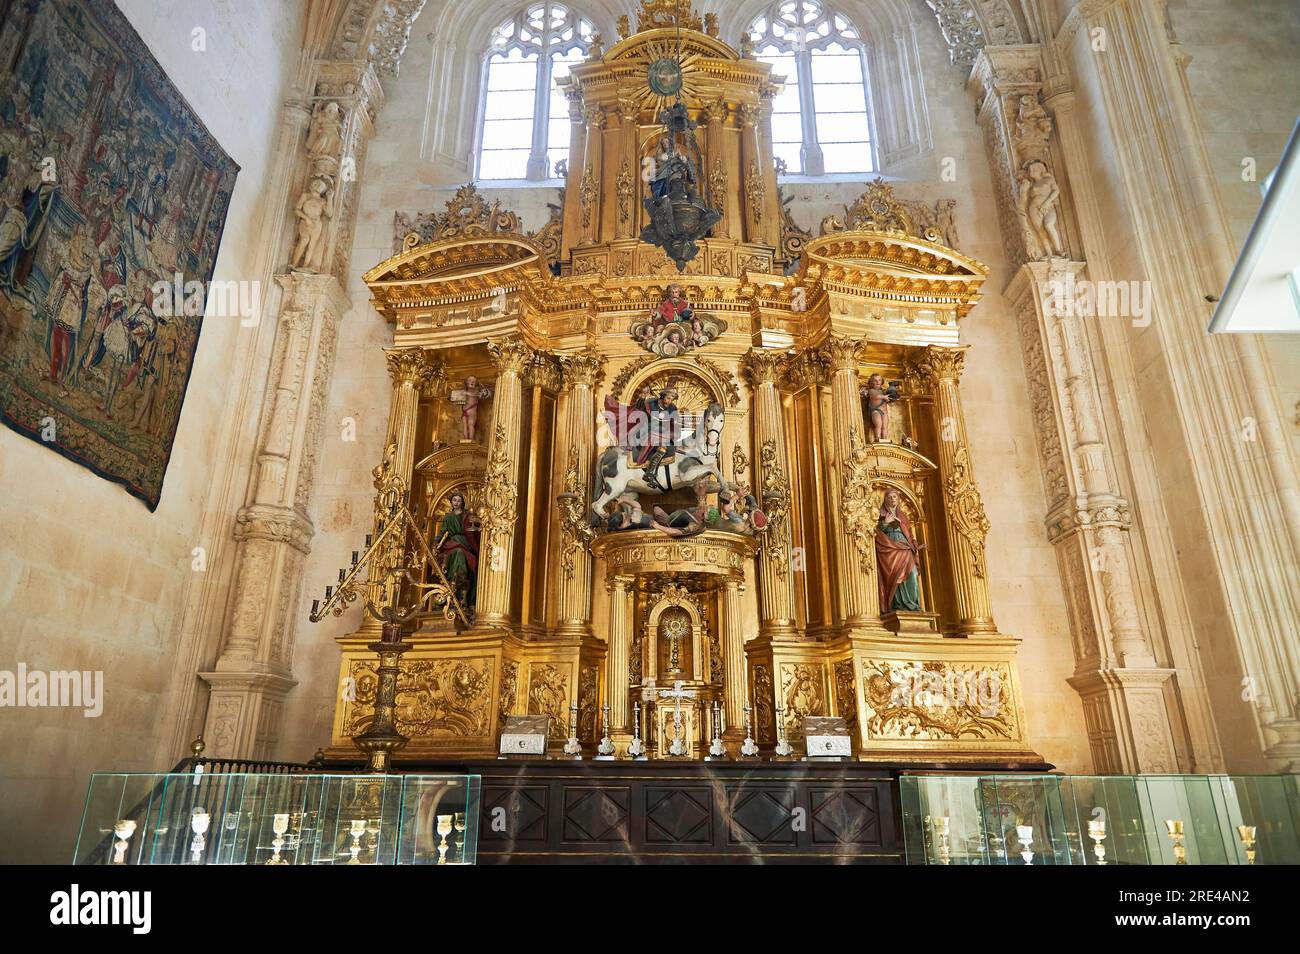 Altarpiece of the chapel of Santiago in the Cathedral of Burgos, Burgos, castilla y Leon, Spain Stock Photo